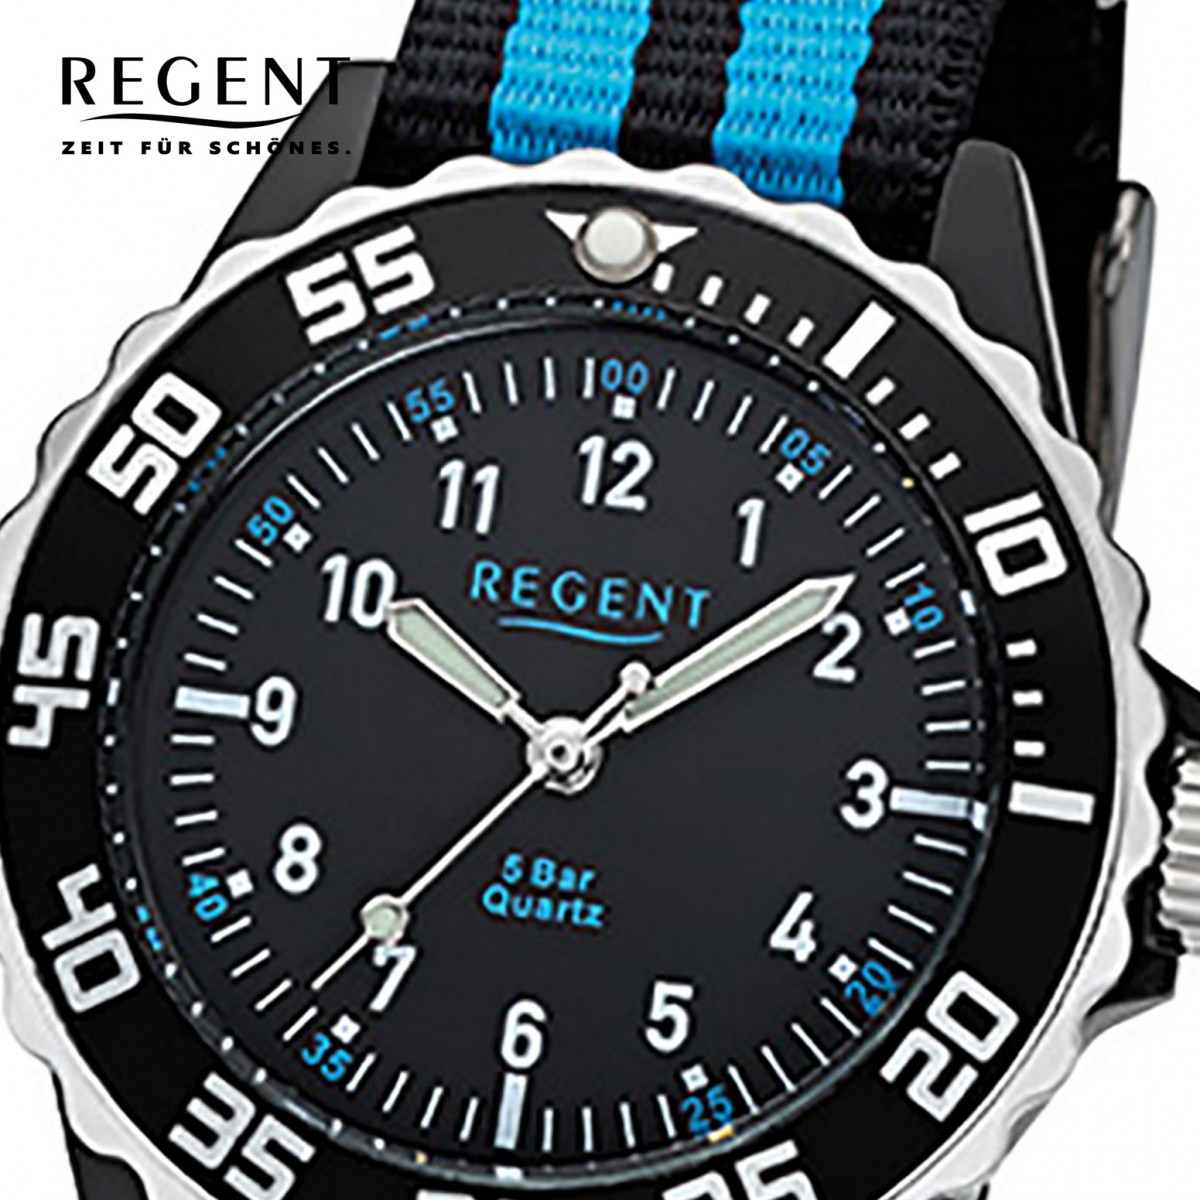 blau Stoff-Armband URF1126 32-F-1126 schwarz Kinder, Textil, Jugend-Armbanduhr Quarz-Uhr Regent